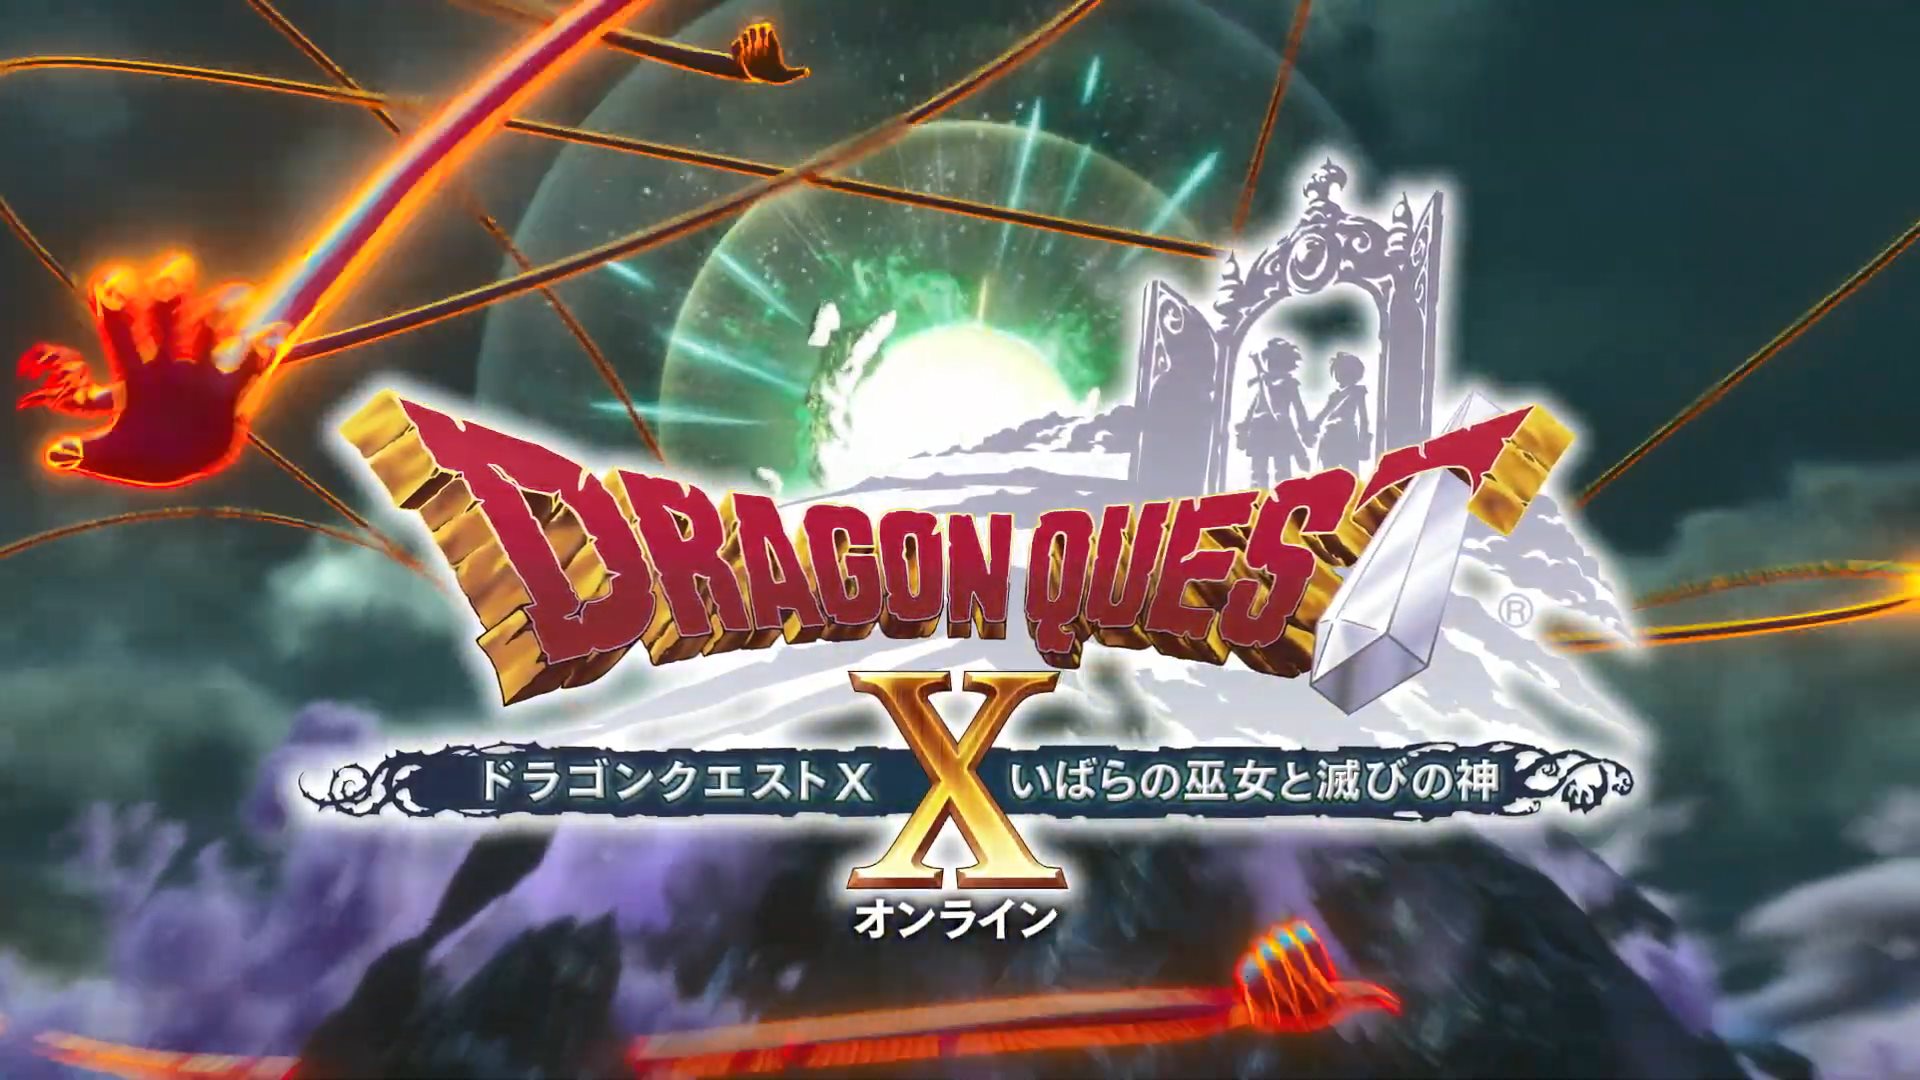 PS4版《勇者斗恶龙X》全版本合集宣传片 5月14日发售